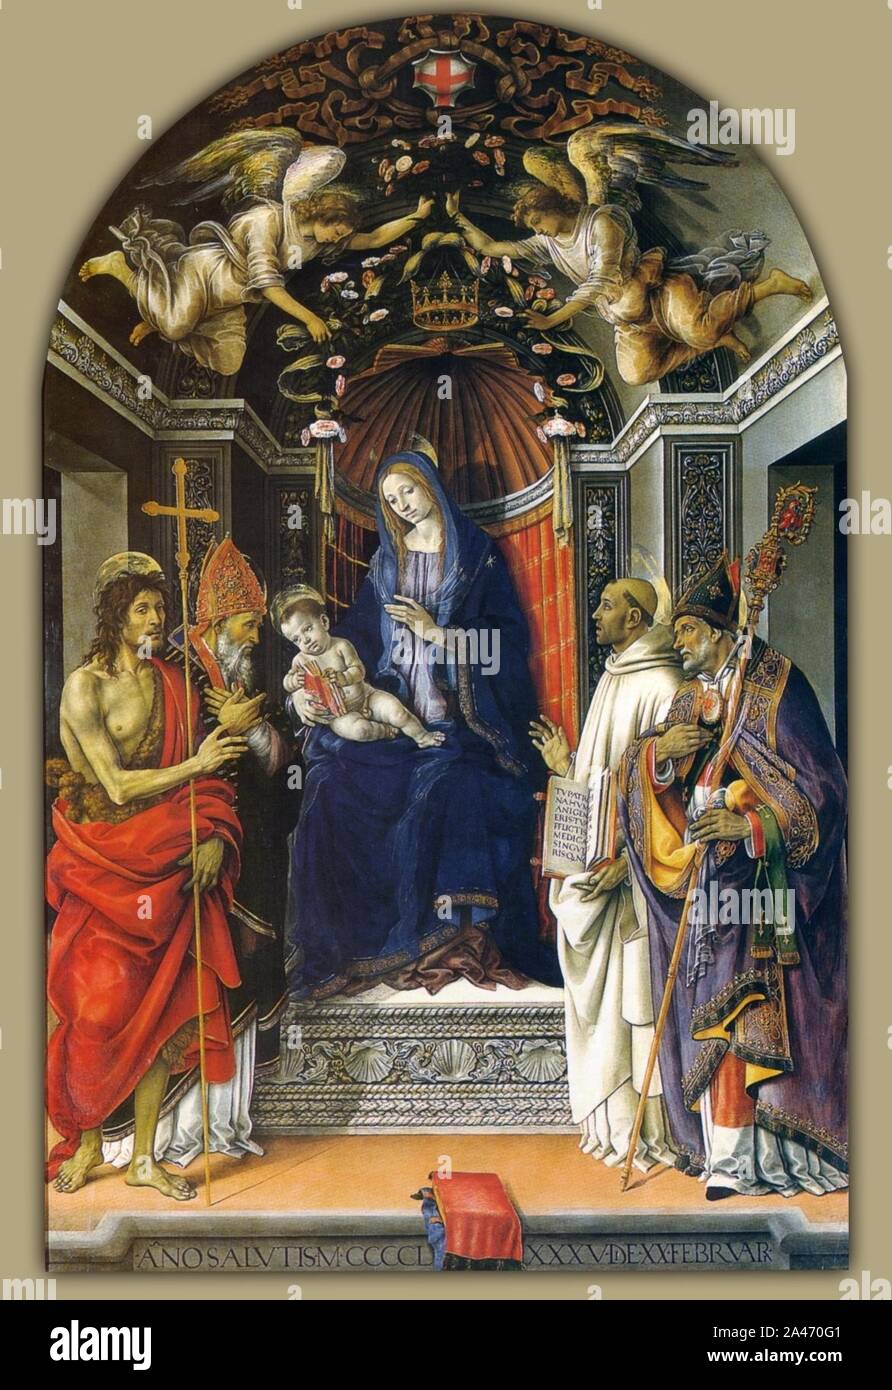 Filippino lippi, madonna col bambino e i santi g.battista, vittore, bernardo e zanobi (1485) uffizi. Stock Photo